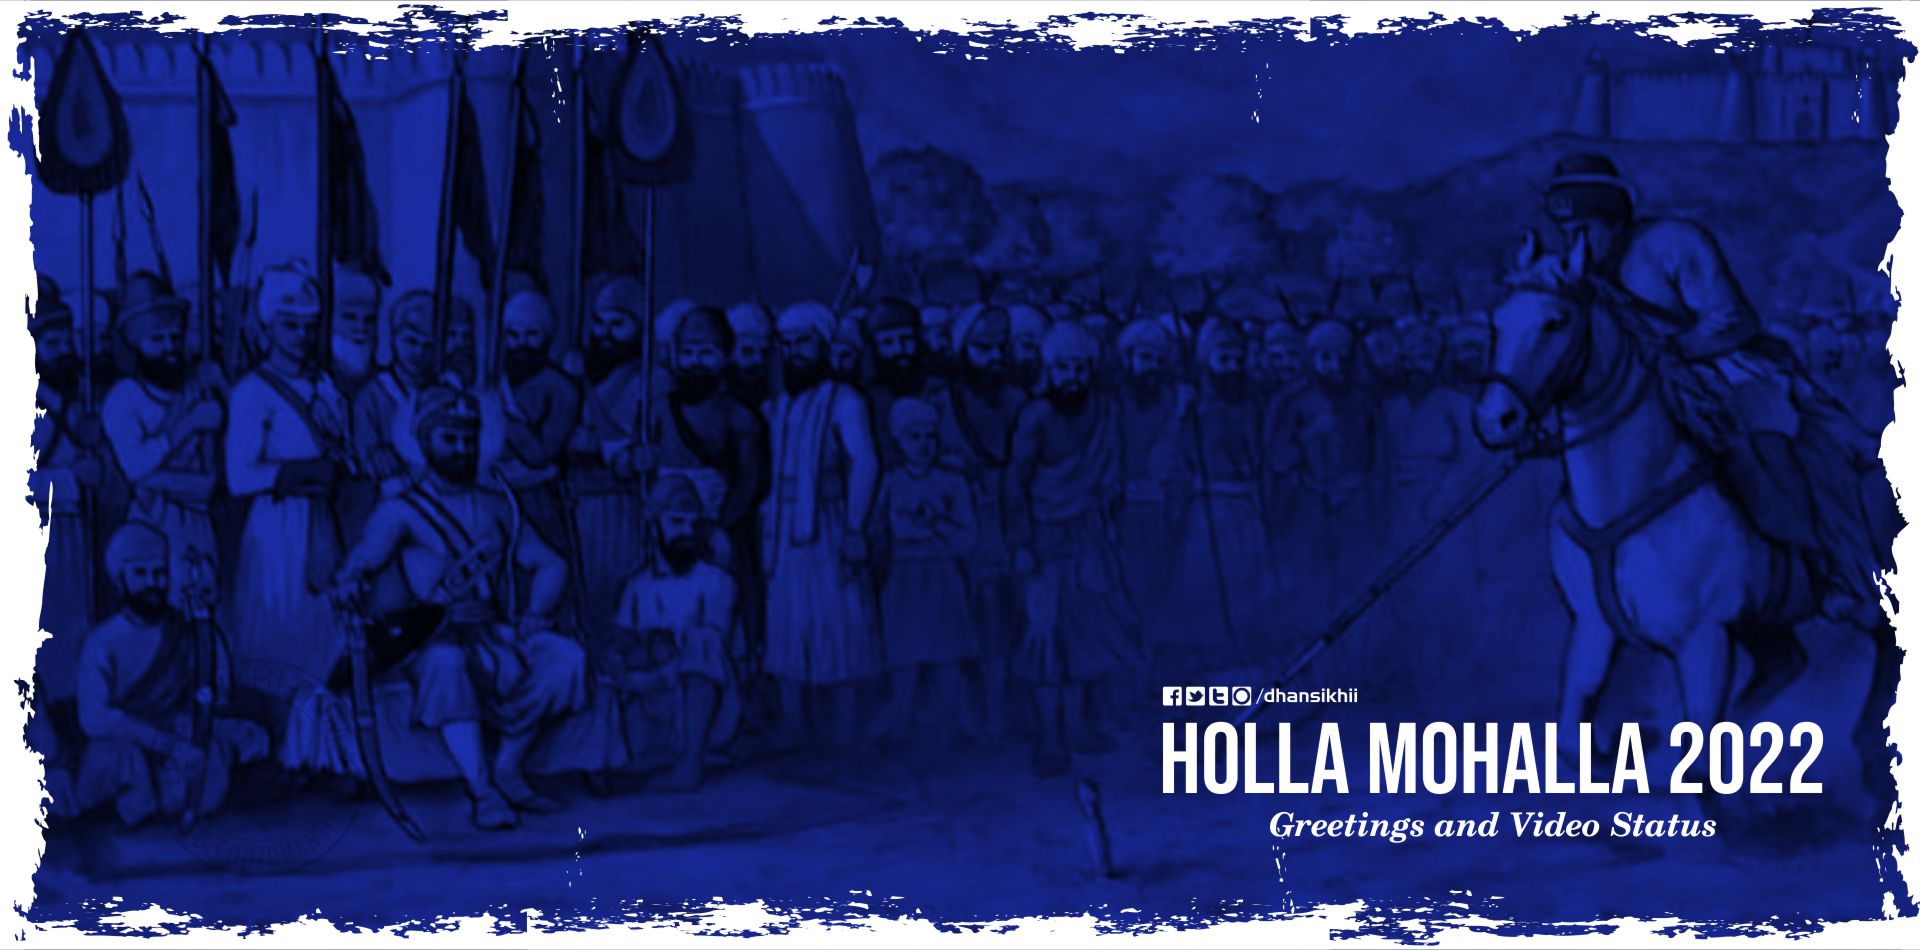 Hola Mohalla 2022 Anandpur Sahib – New Greetings